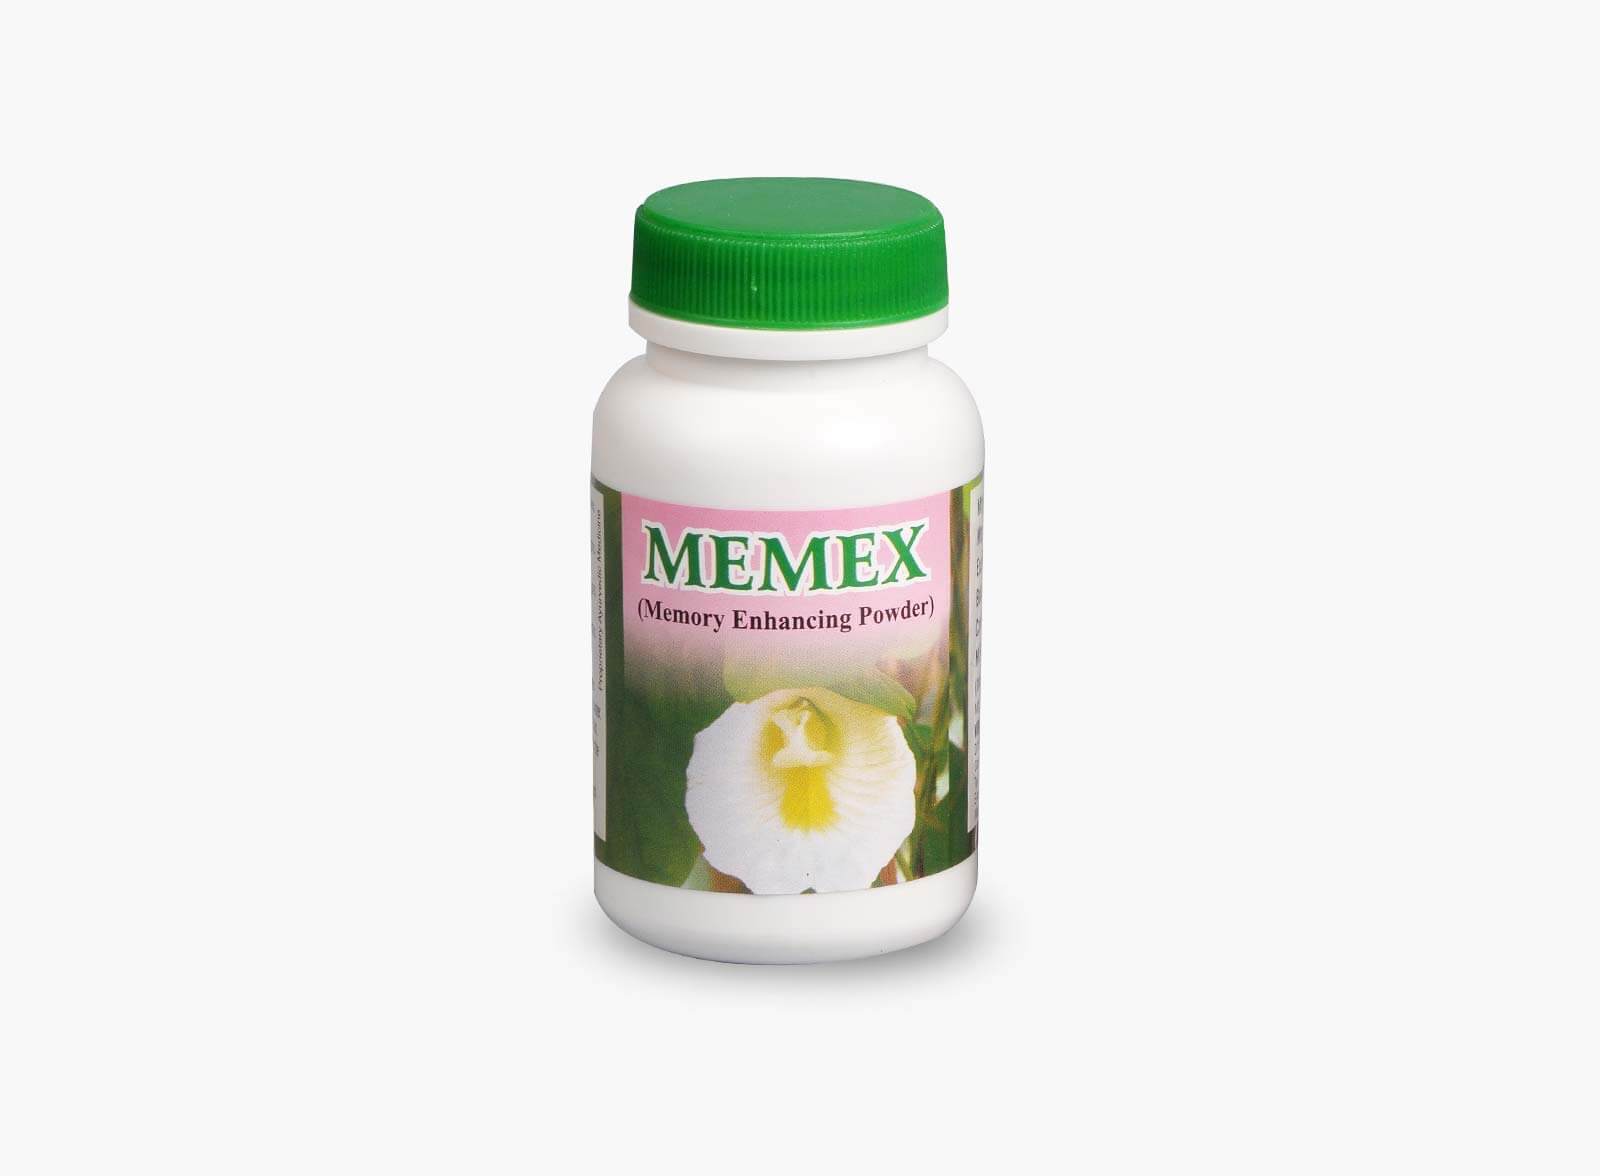 memex